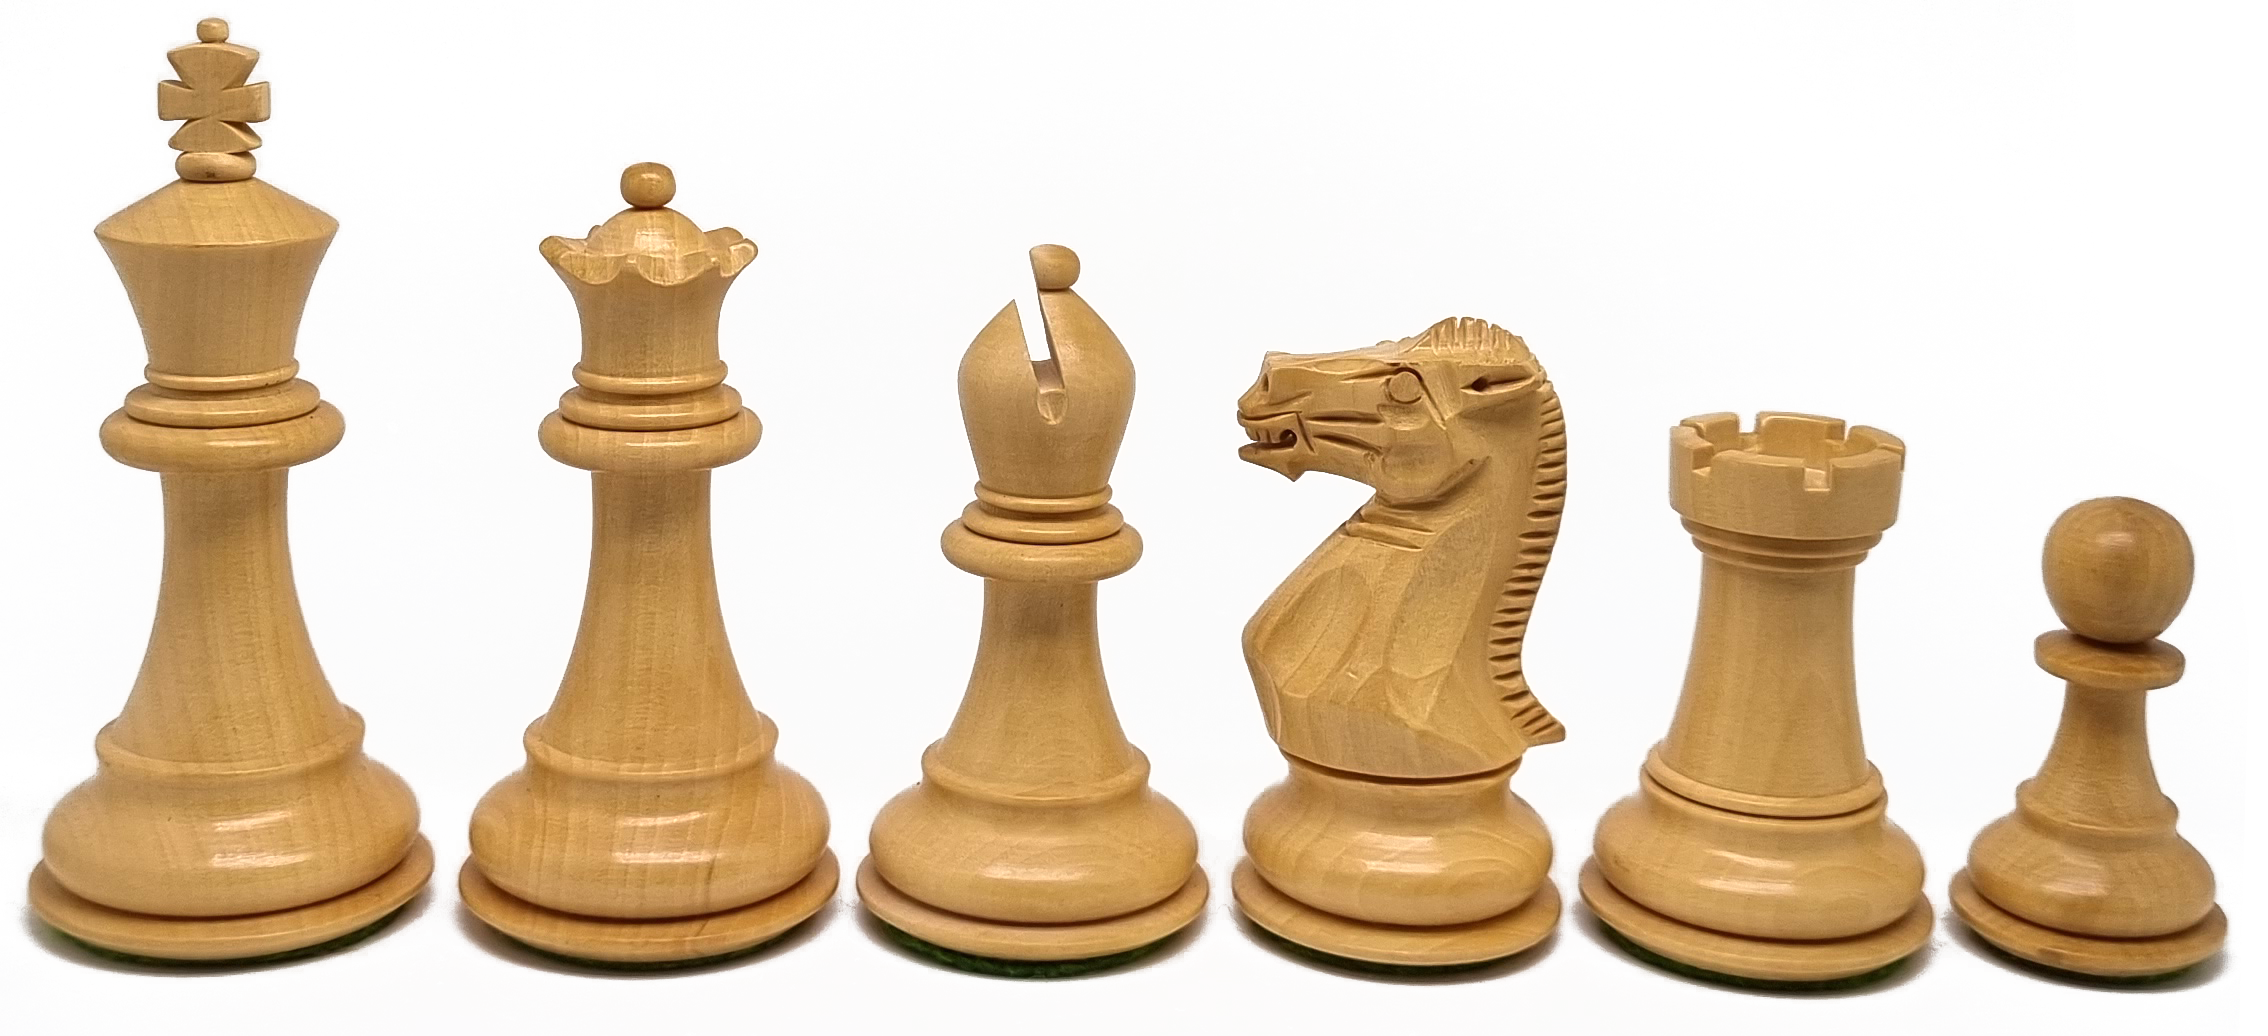 VI/ Piezas de ajedrez modelo Stallion "3,50" Shisham.